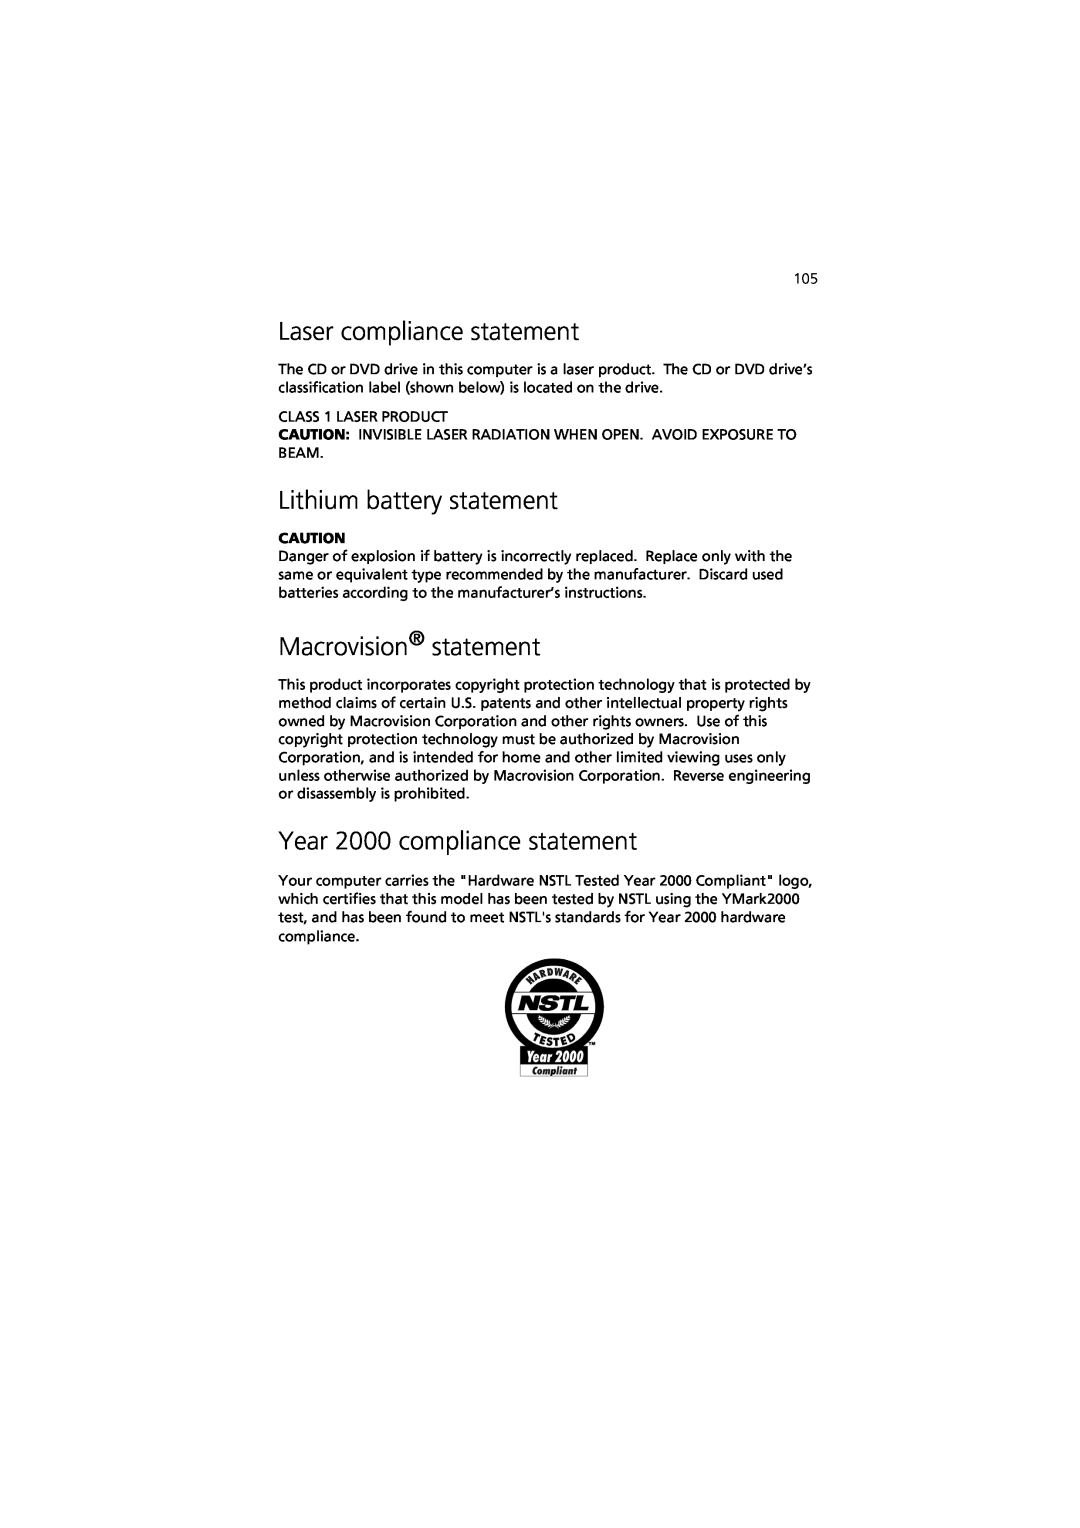 Acer 7600 Laser compliance statement, Lithium battery statement, Macrovision statement, Year 2000 compliance statement 